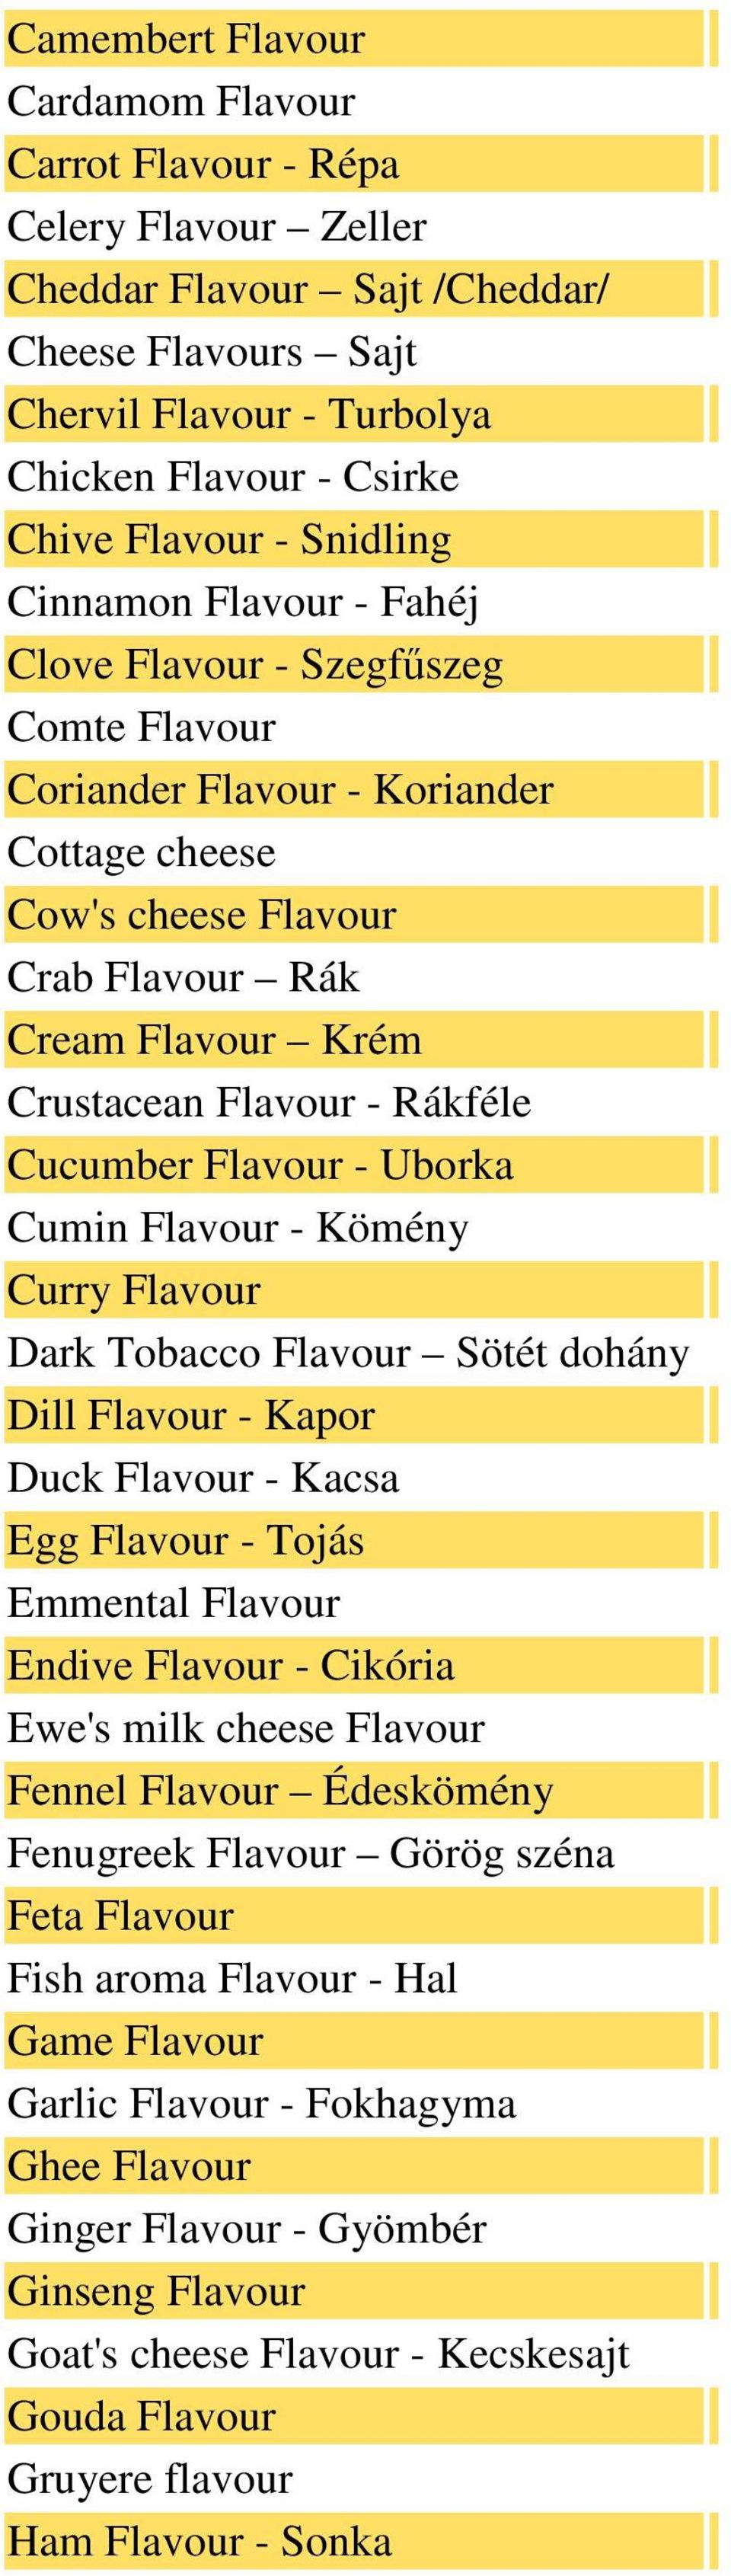 Rákféle Cucumber Flavour - Uborka Cumin Flavour - Kömény Curry Flavour Dark Tobacco Flavour Sötét dohány Dill Flavour - Kapor Duck Flavour - Kacsa Egg Flavour - Tojás Emmental Flavour Endive Flavour